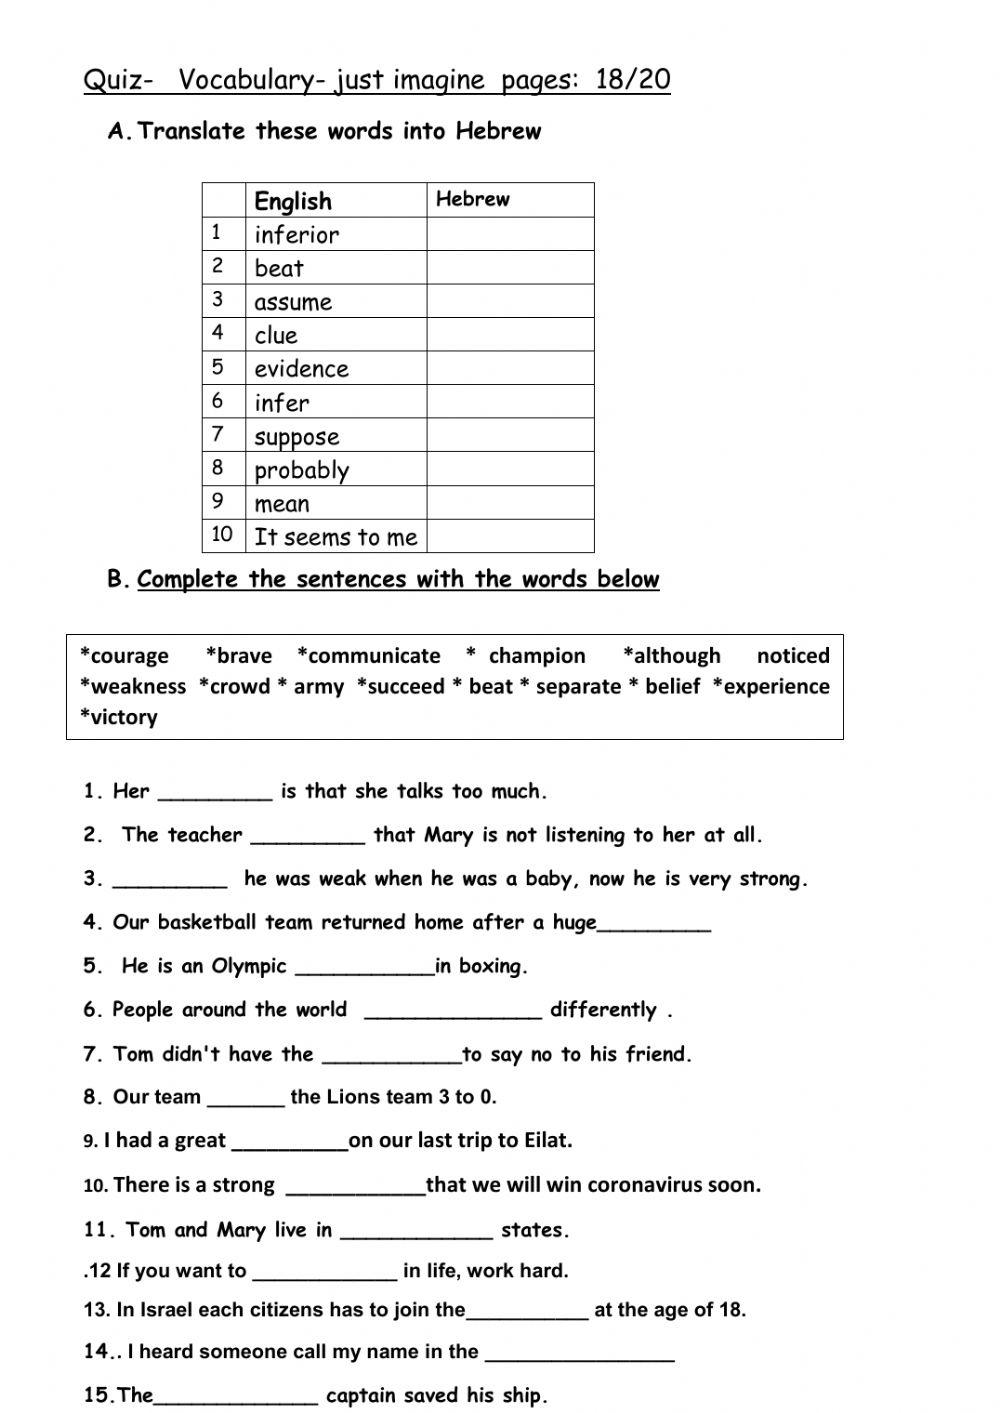 Just imagine - vocabulary quiz  p 18-20